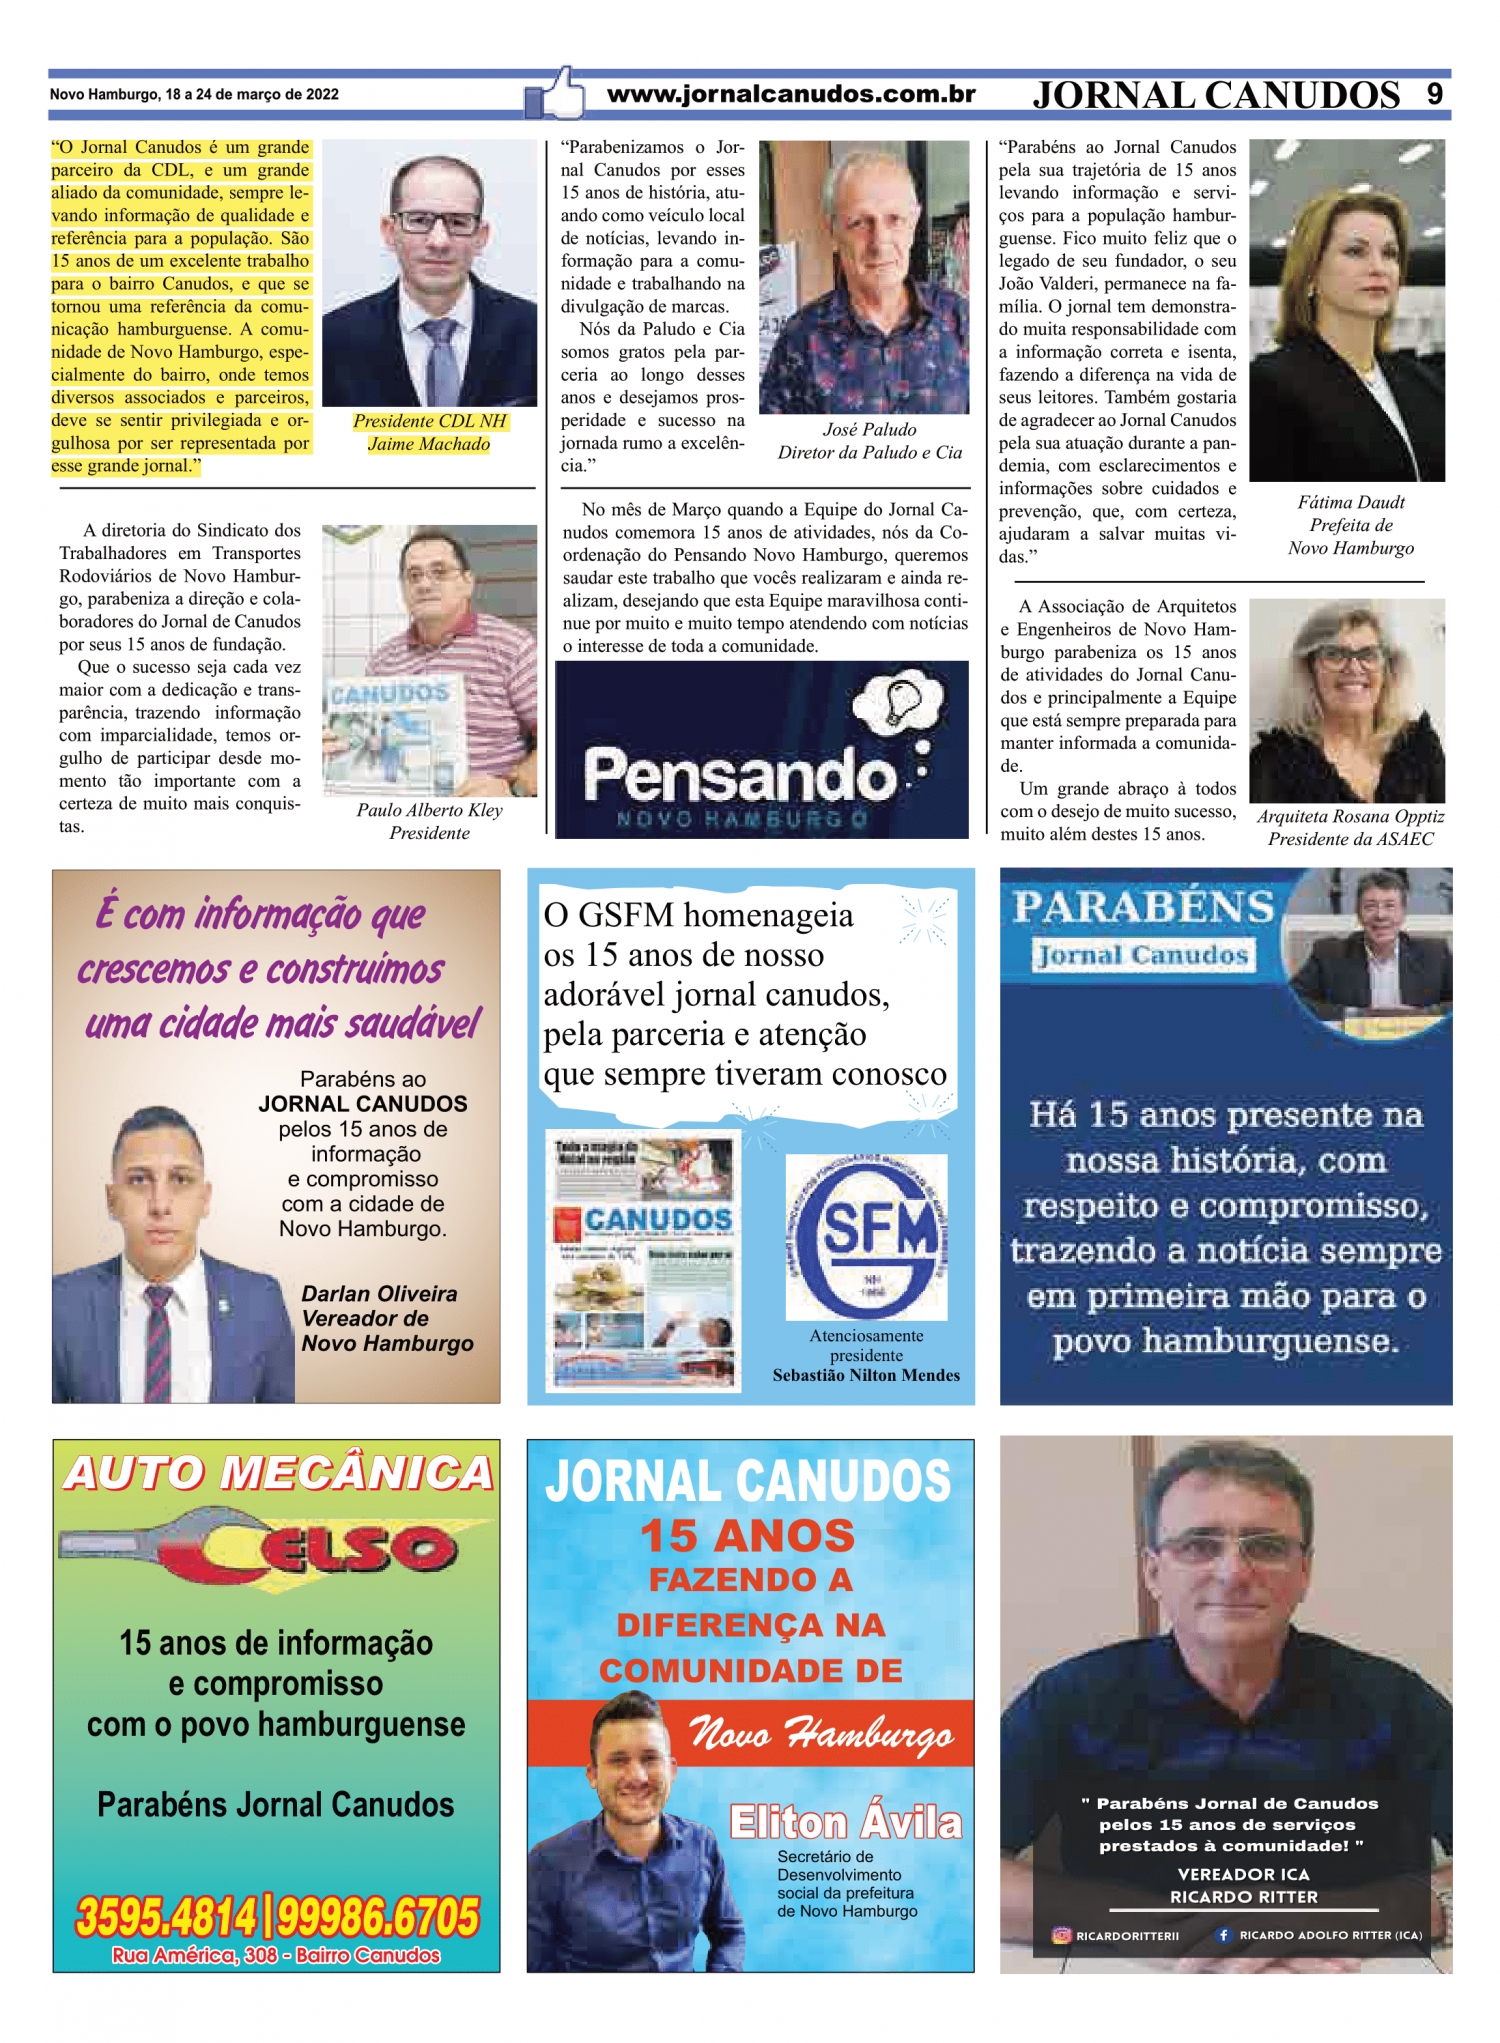 Presidente da CDL NH parabeniza Jornal Canudos pelos seus 15 anos, confira!